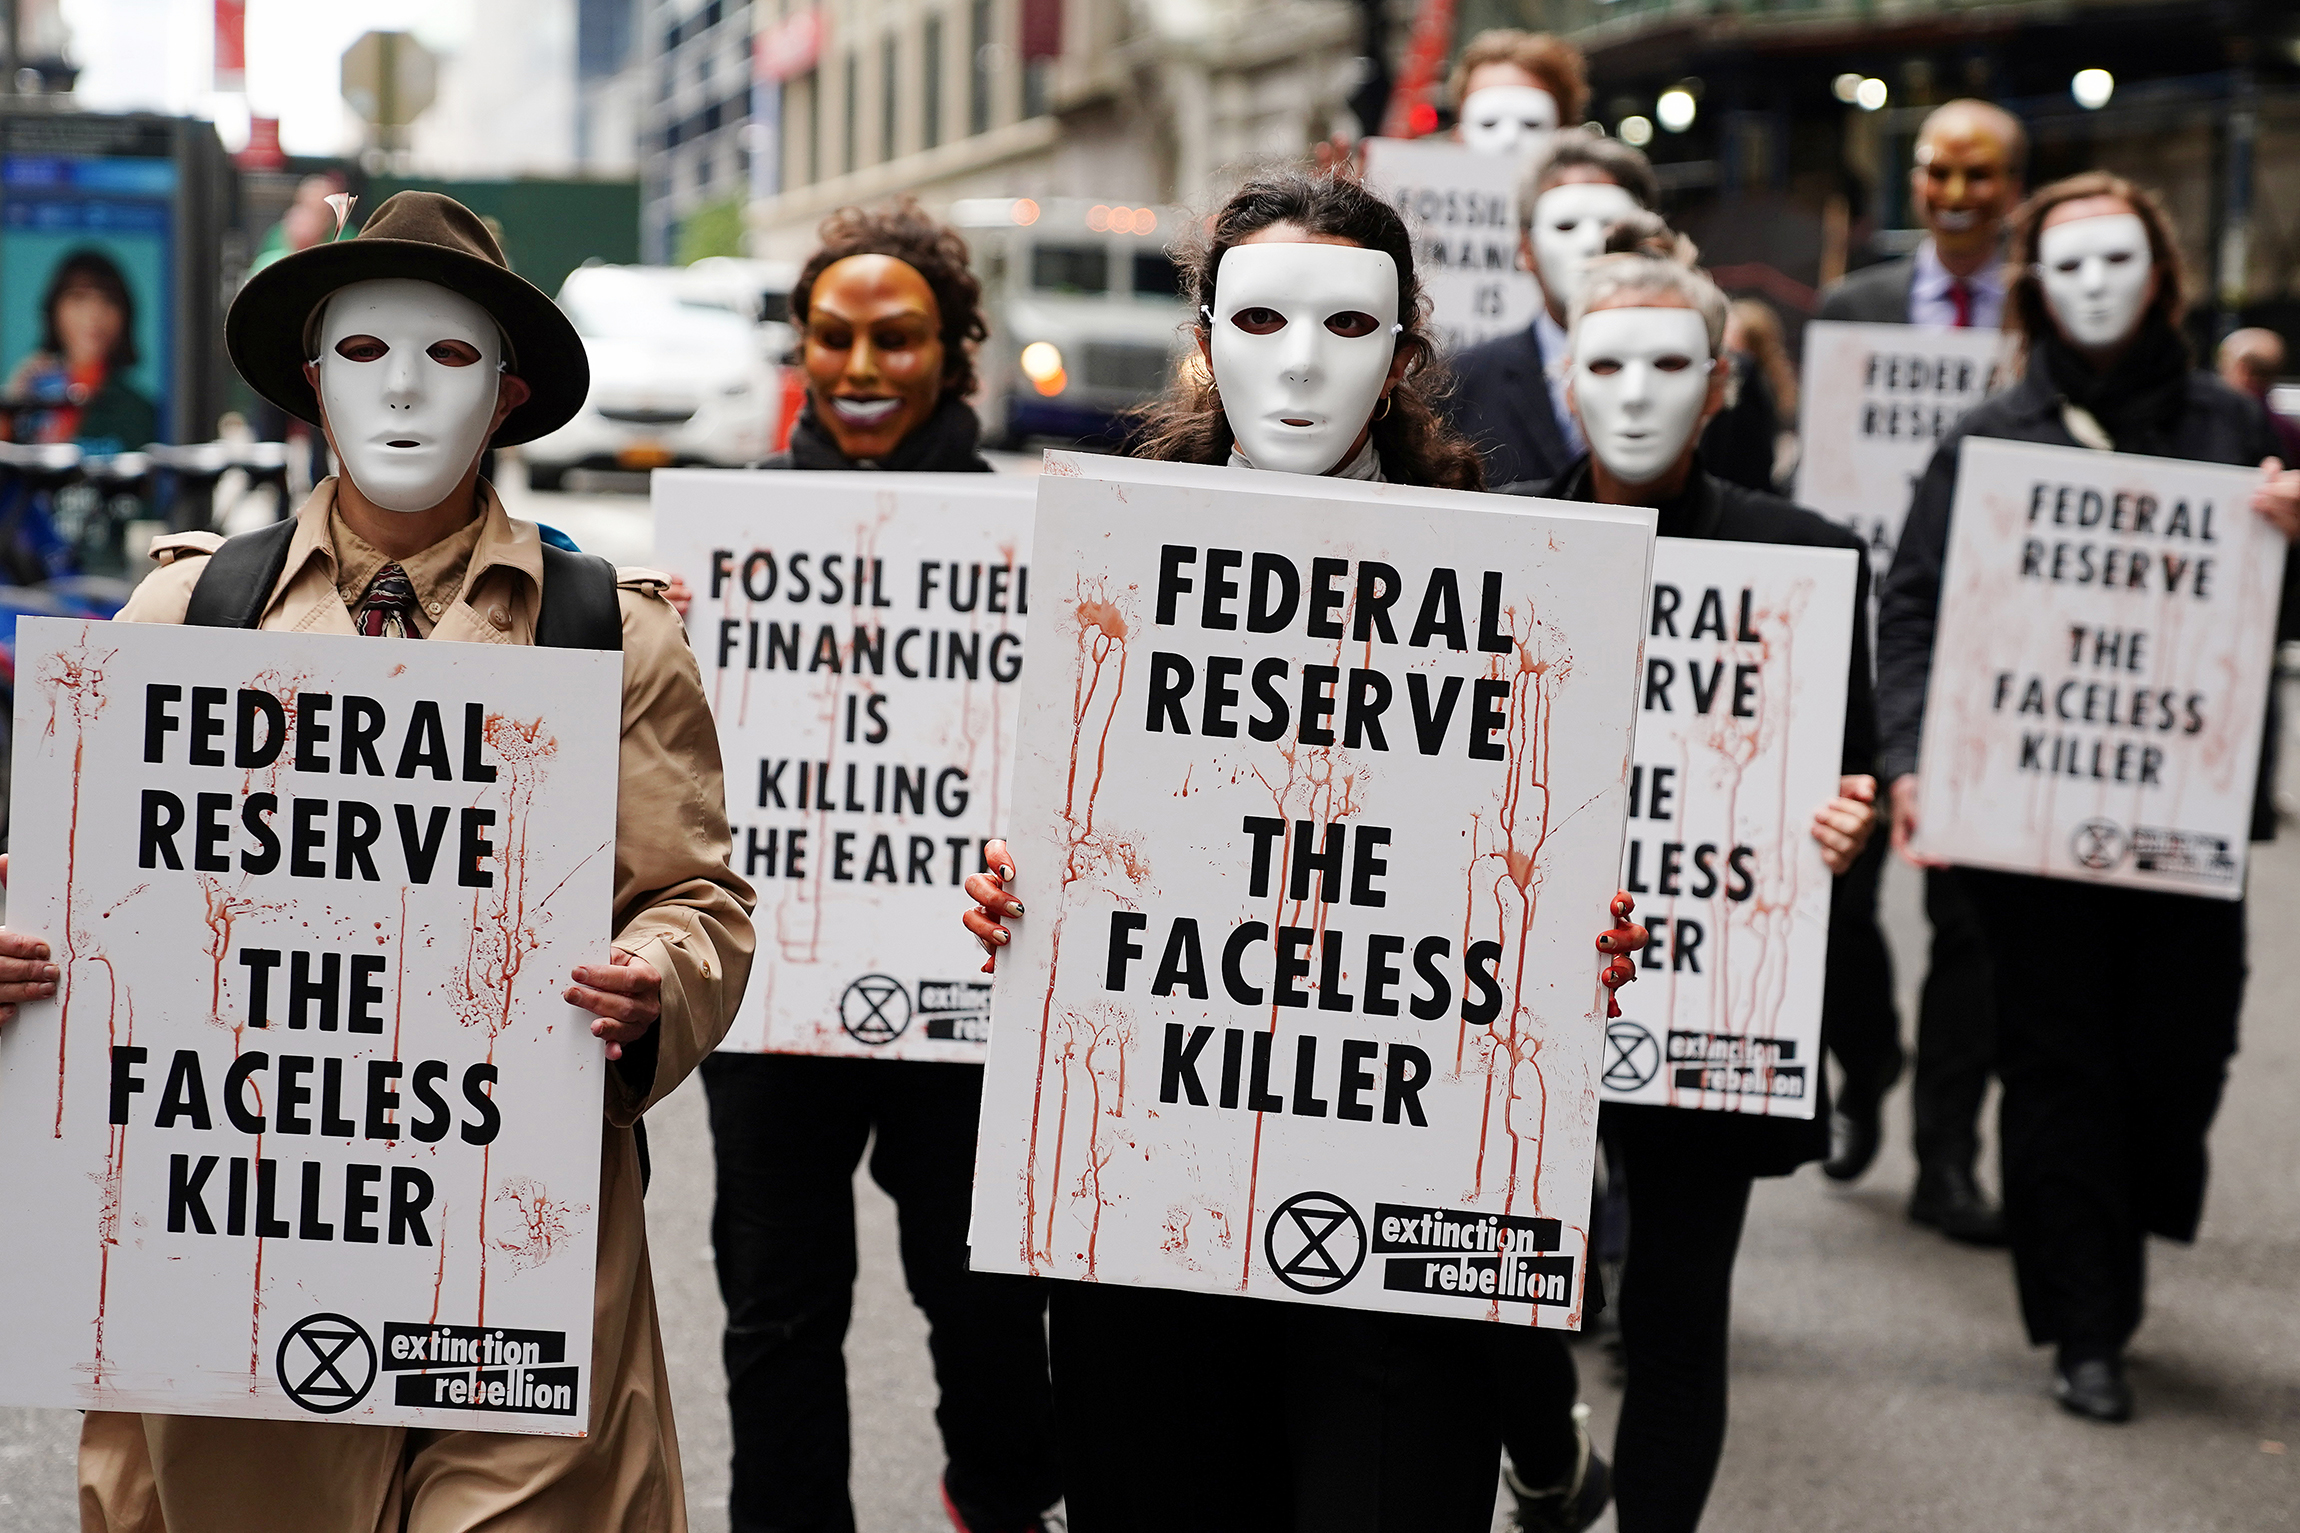 29 октября, Нью-Йорк (США), акция протеста на Манхэттене против политики ФРС. Надписи на плакатах: &laquo;ФРС&nbsp;&mdash; безликий убийца&raquo; и &laquo;Финансировать добычу ископаемого топлива&nbsp;&mdash; это убивать Землю&raquo;